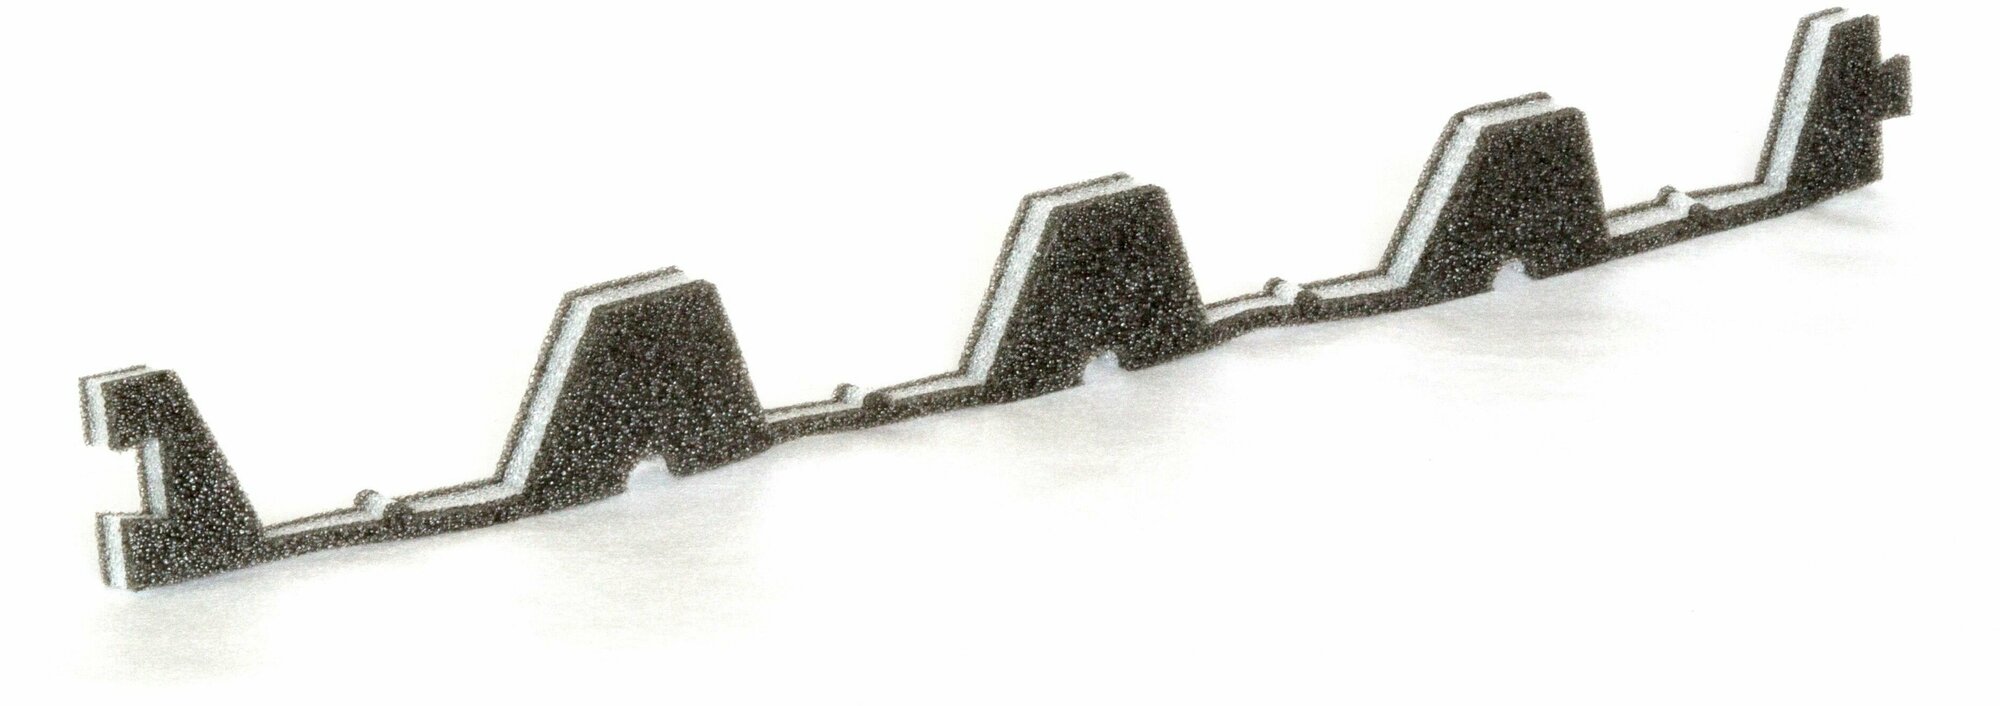 Уплотнитель для профнастила Н-60 нижний (10 шт.) длина 845 мм без клеевого слоя